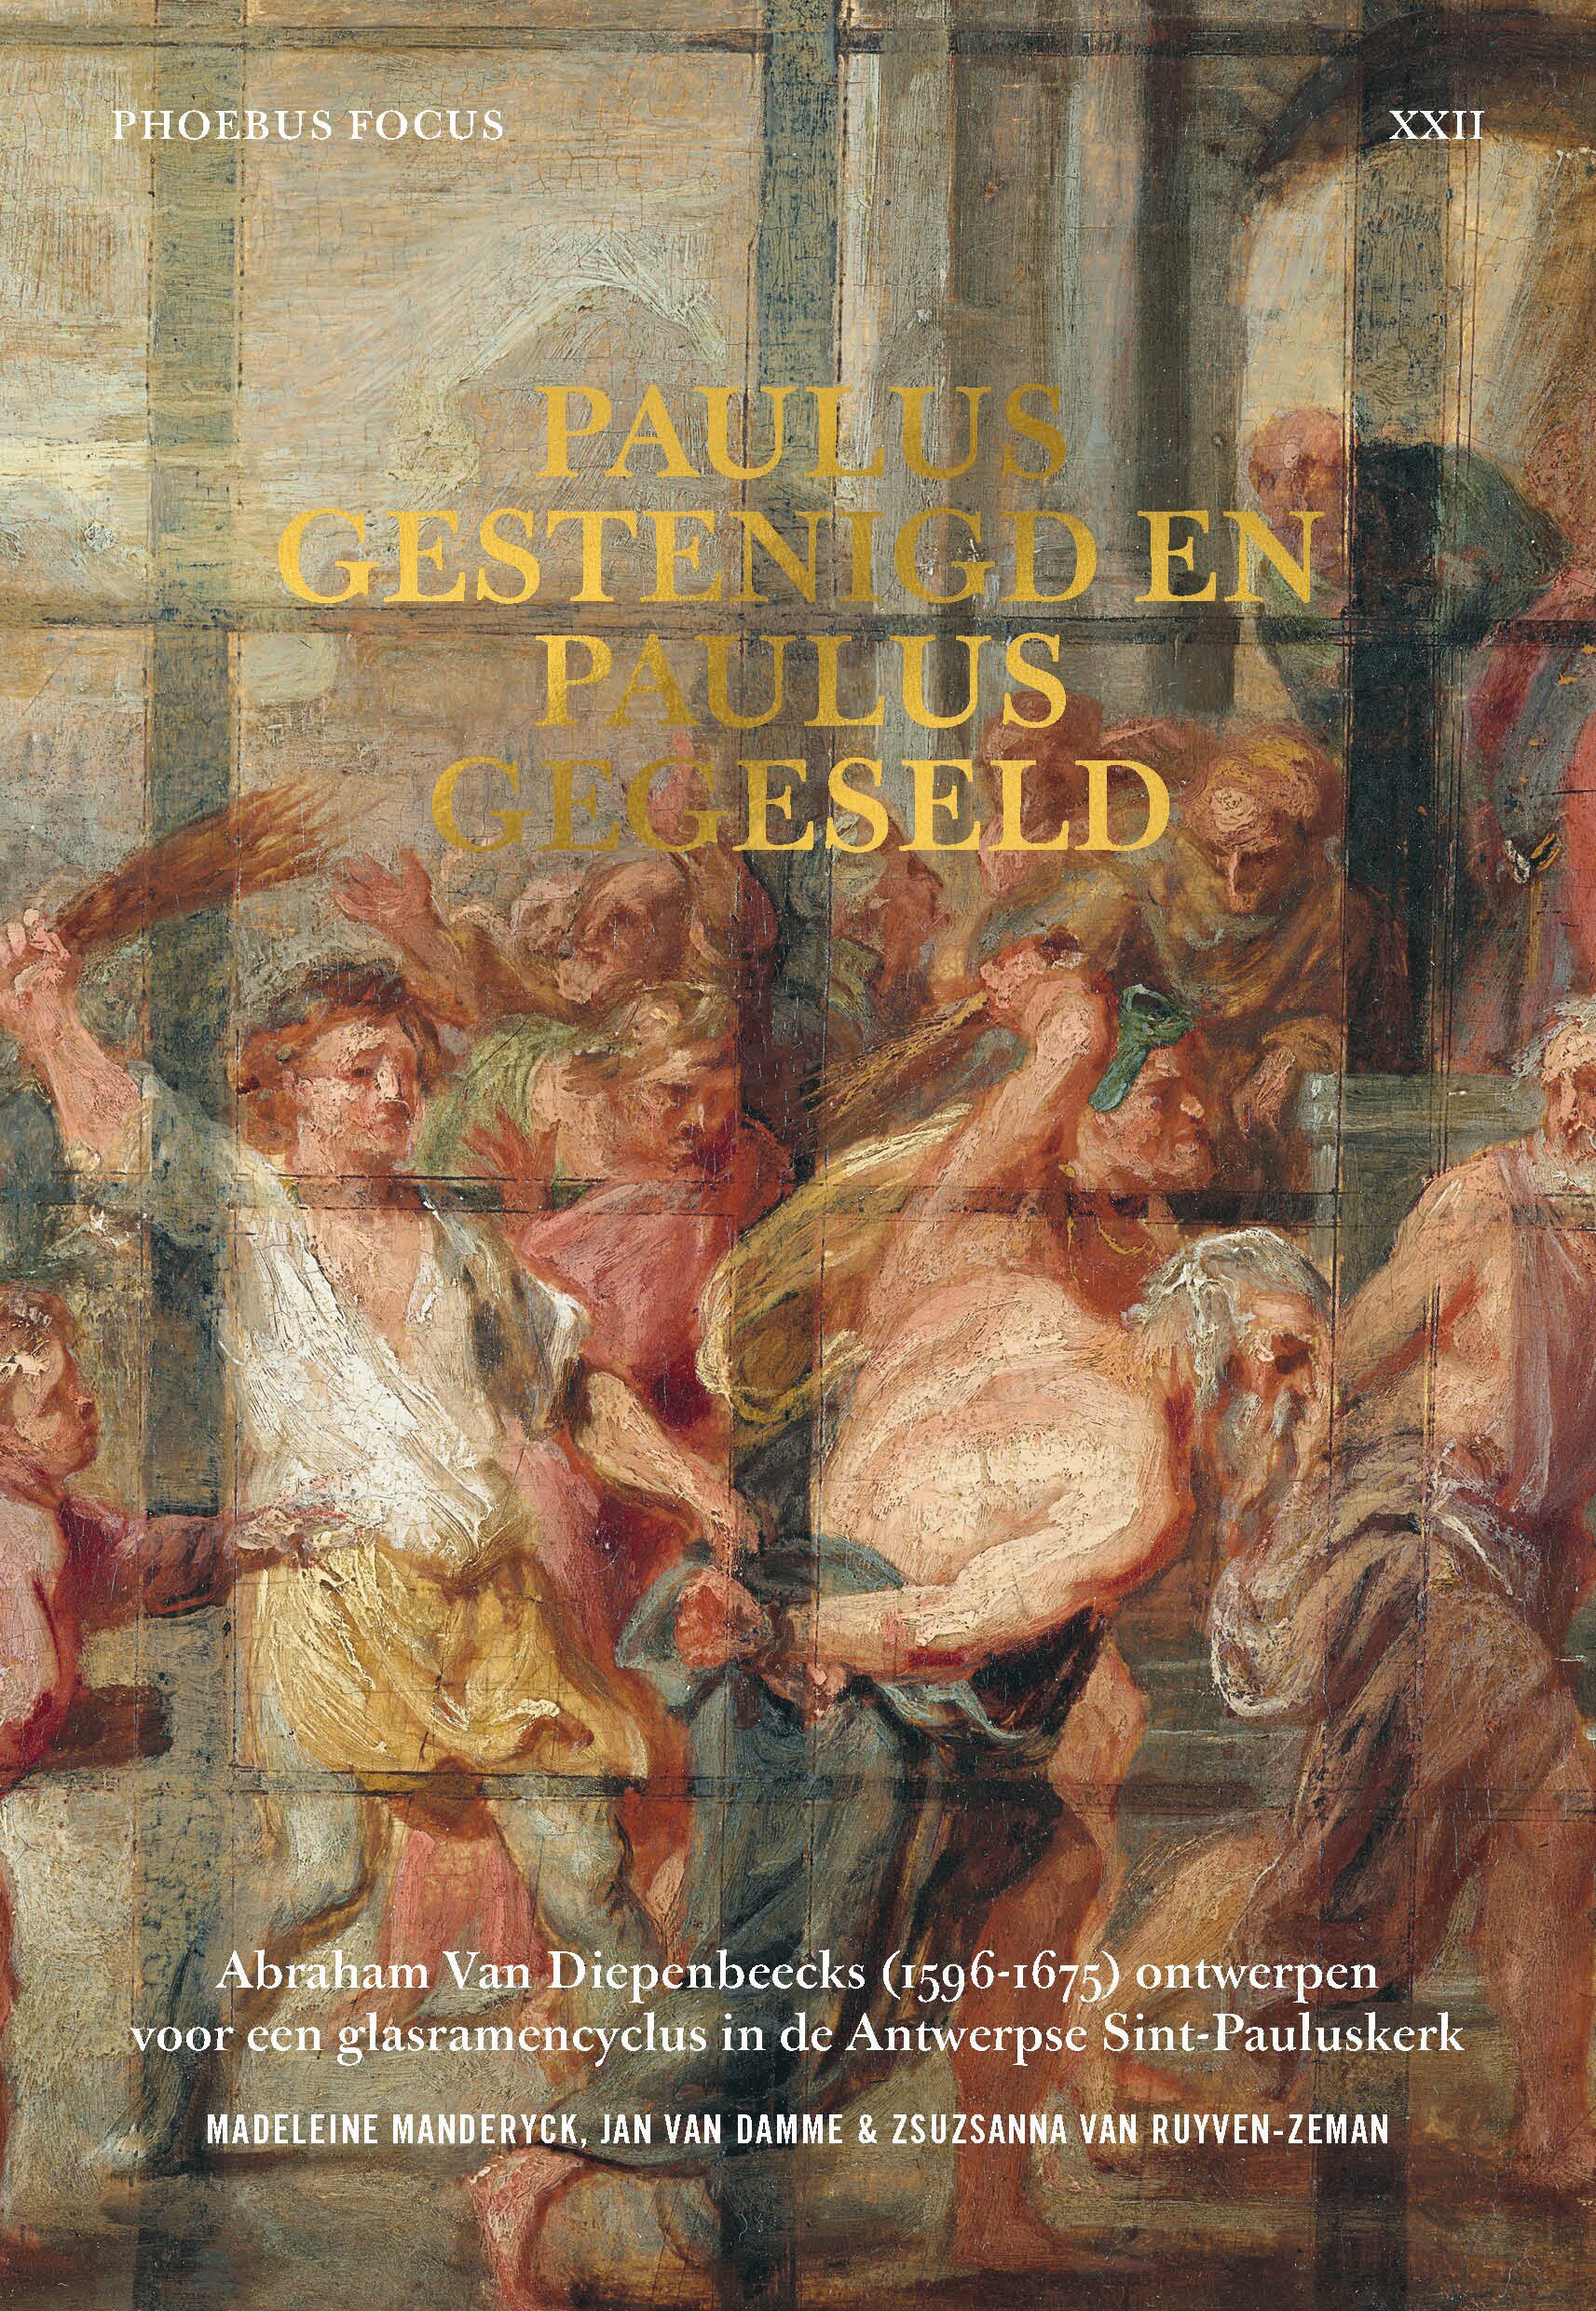 Phoebus Focus - Paulus gestenigd en Paulus gegeseld